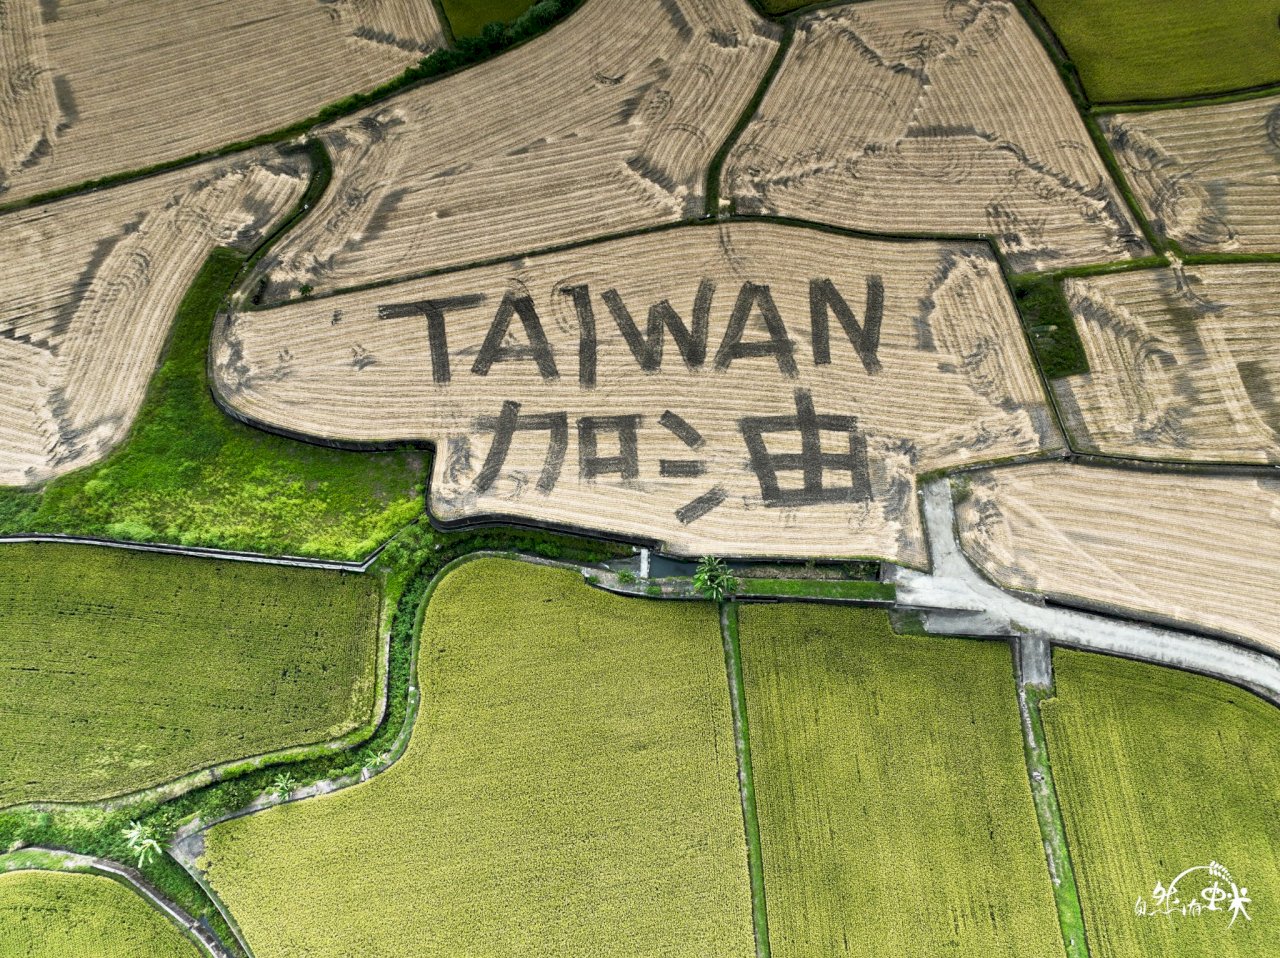 花蓮稻田寫TAIWAN加油 農友盼疫情下傳遞正能量